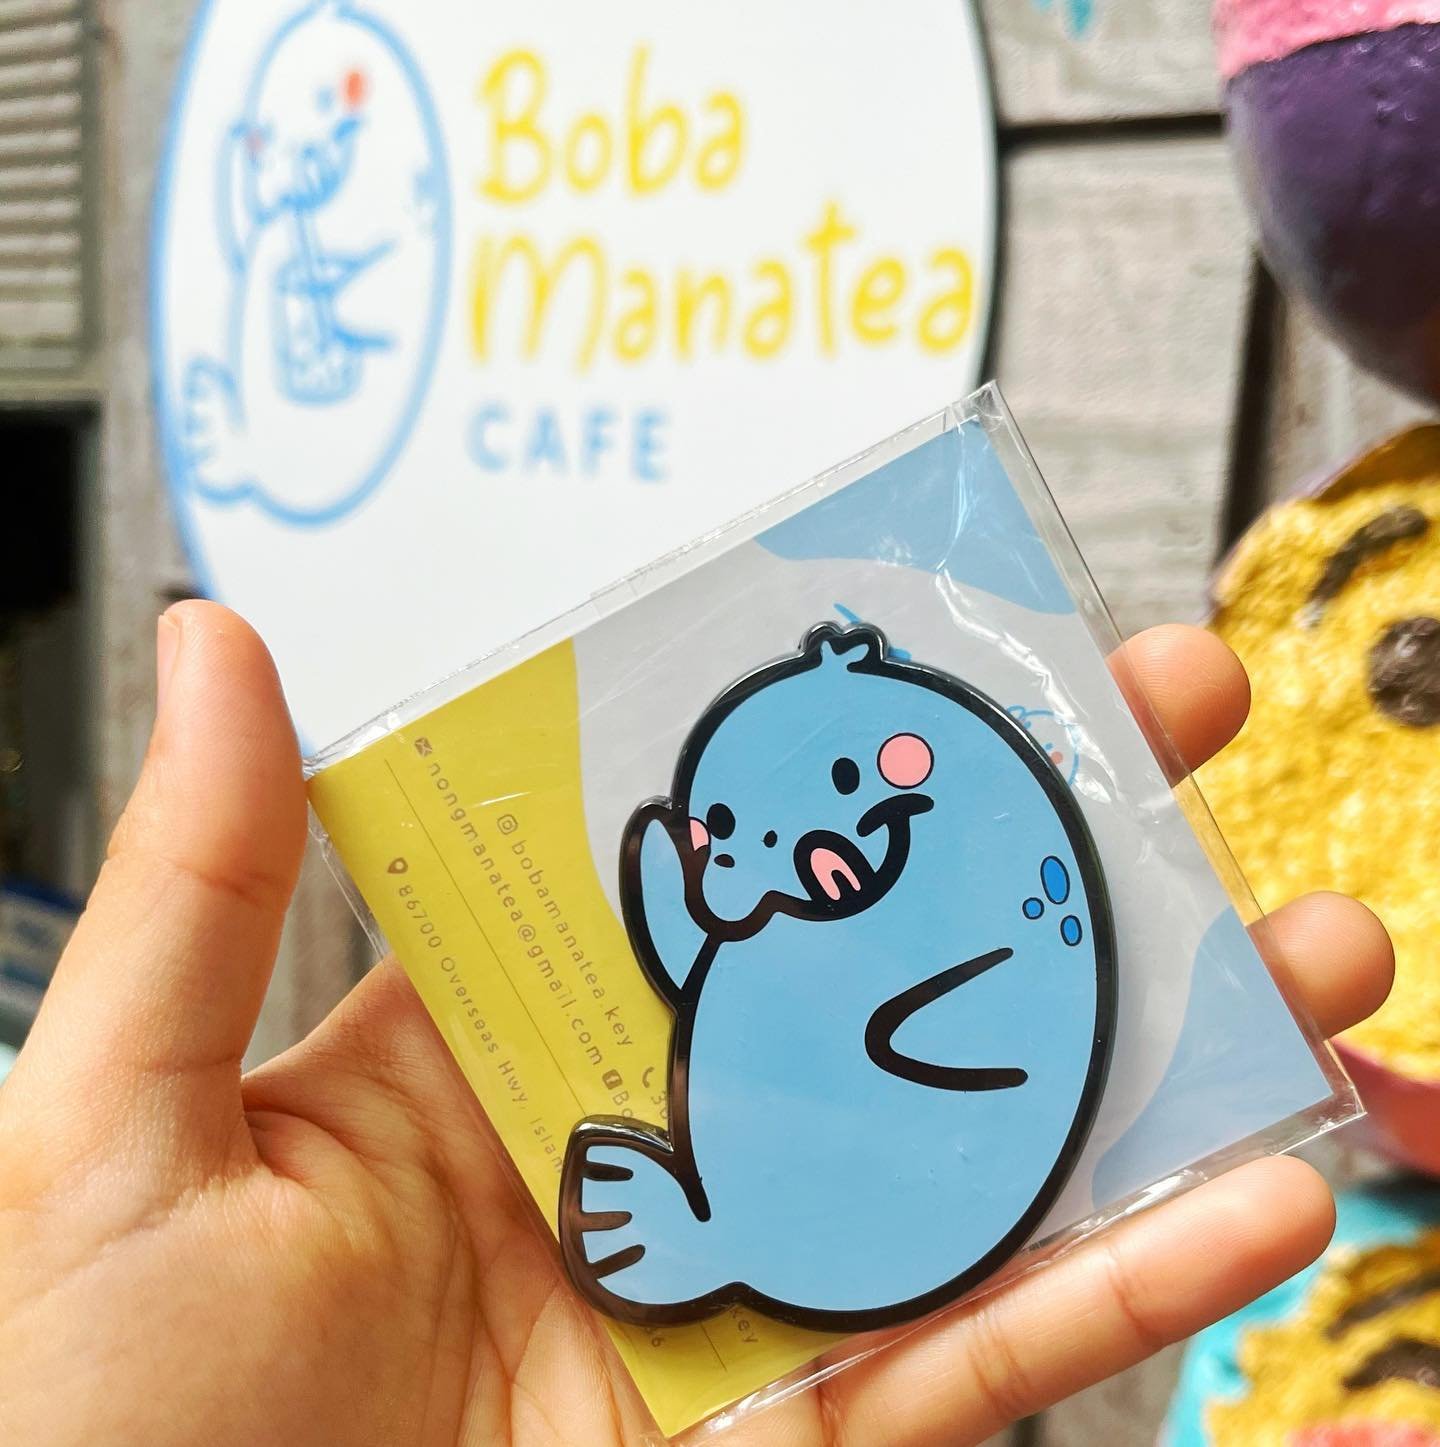 Boba Manatea Cafe 1.jpg